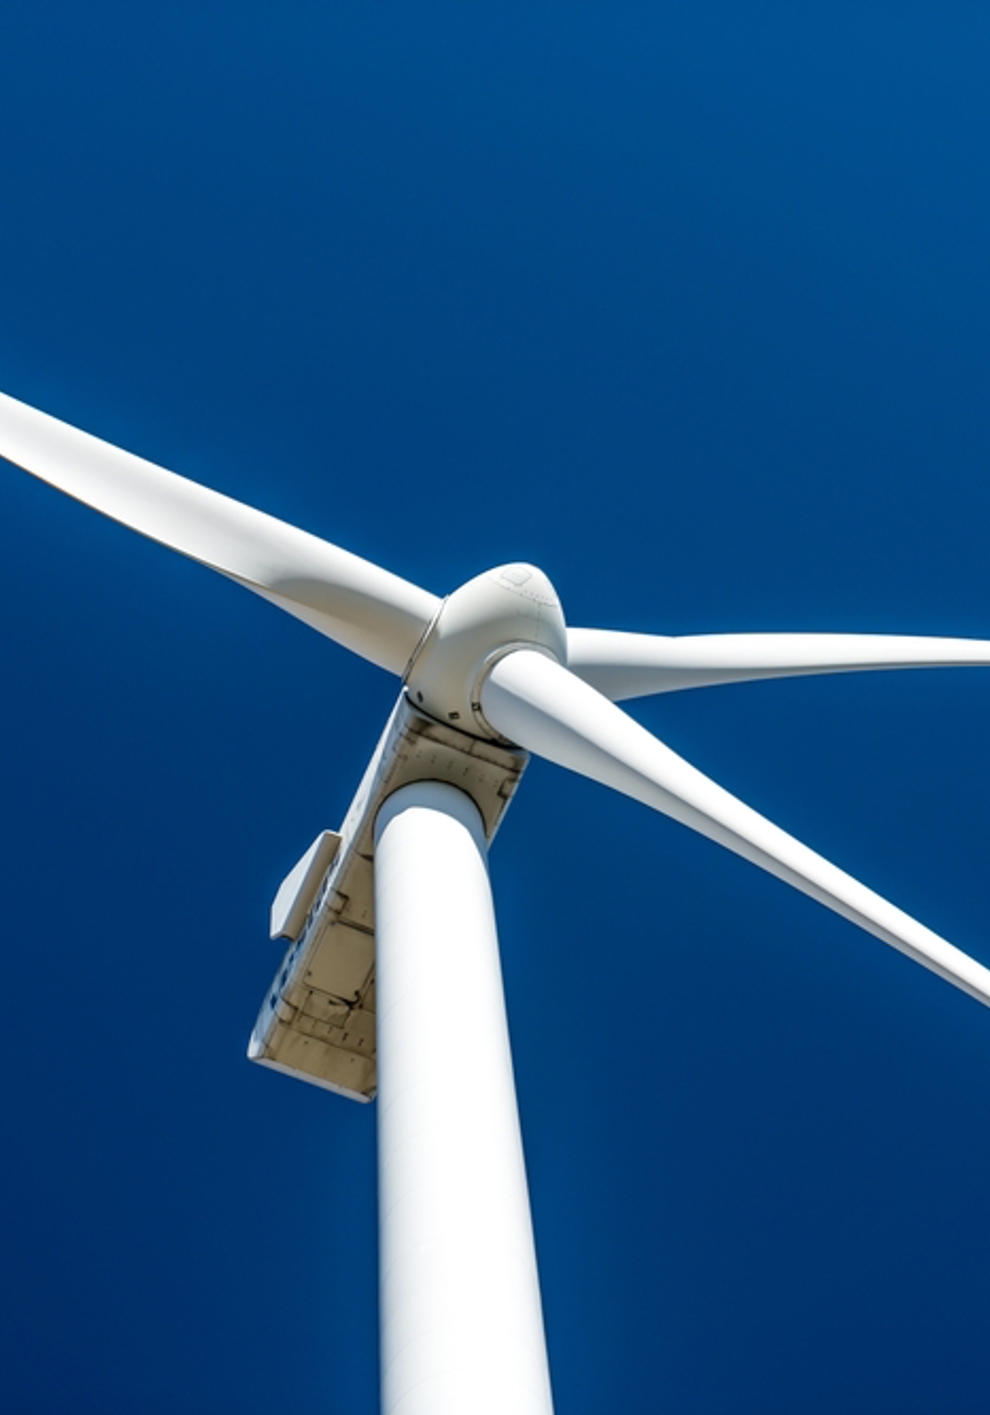 Nutzen statt Abregeln: Eine Strategie zur effizienten Reduzierung der Abregelung von Windenergie durch den Einsatz von Elektrolyseuren und Power-to-Heat-Anlagen